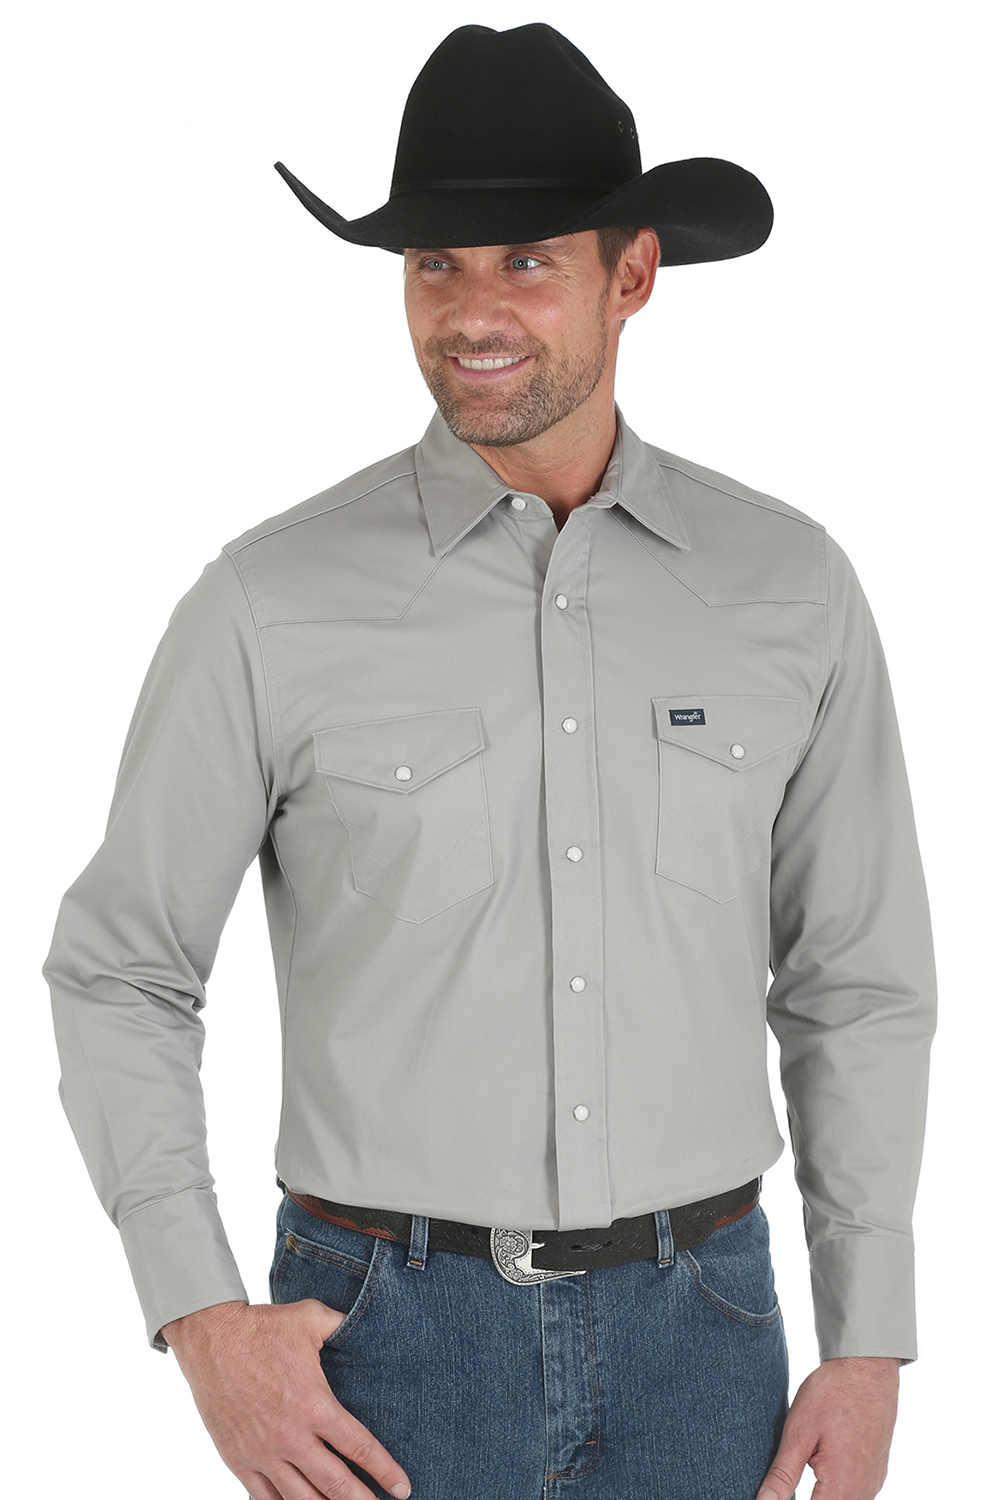 Wrangler Men's Advanced Comfort Cowboy Cut Shirt - Riley & McCormick